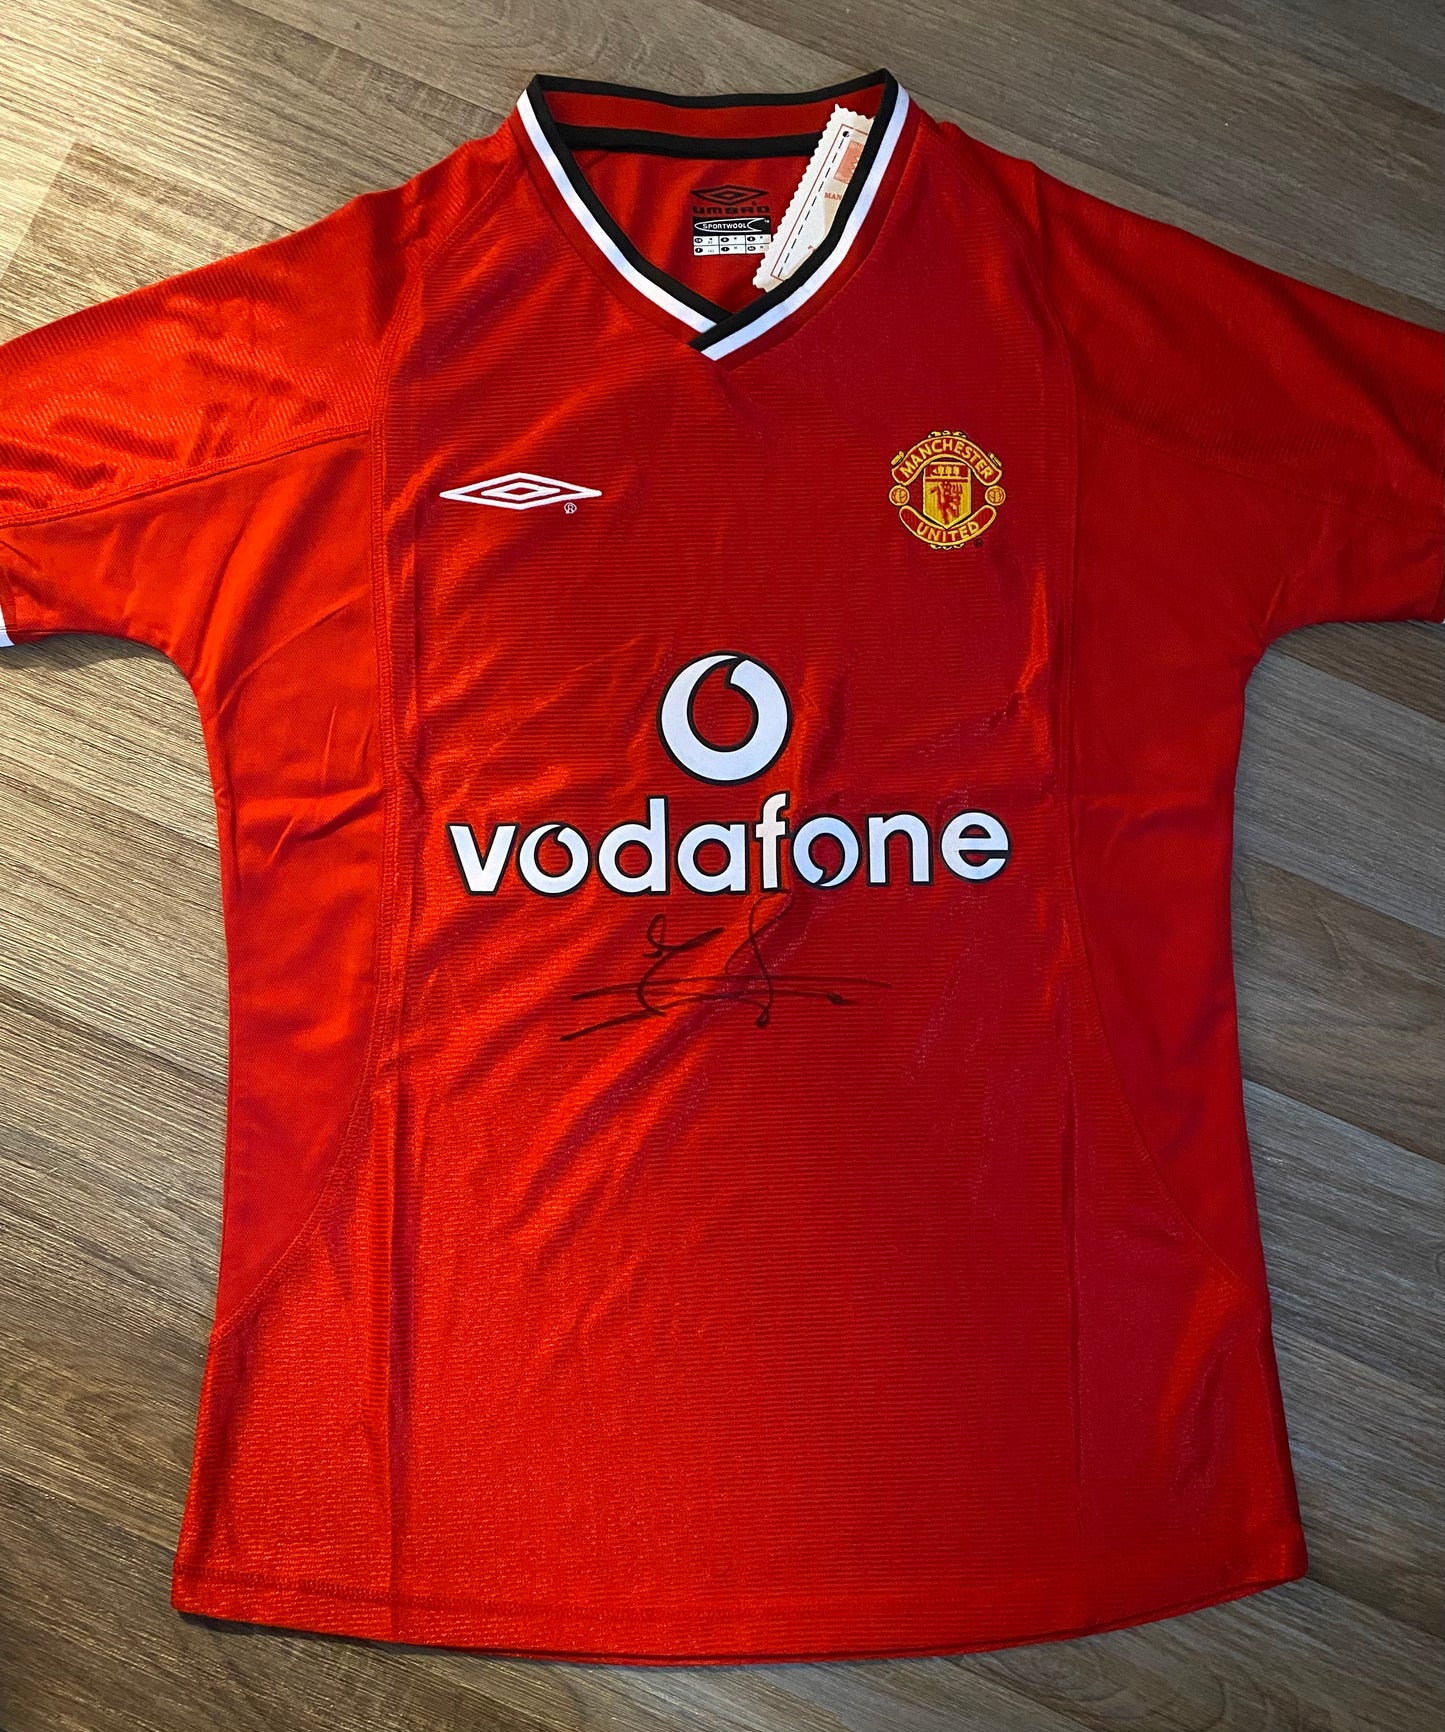 Jaap Stam - Manchester United hand-signed replica shirt - MUFC memorabilia, football shirt (UNFRAMED)